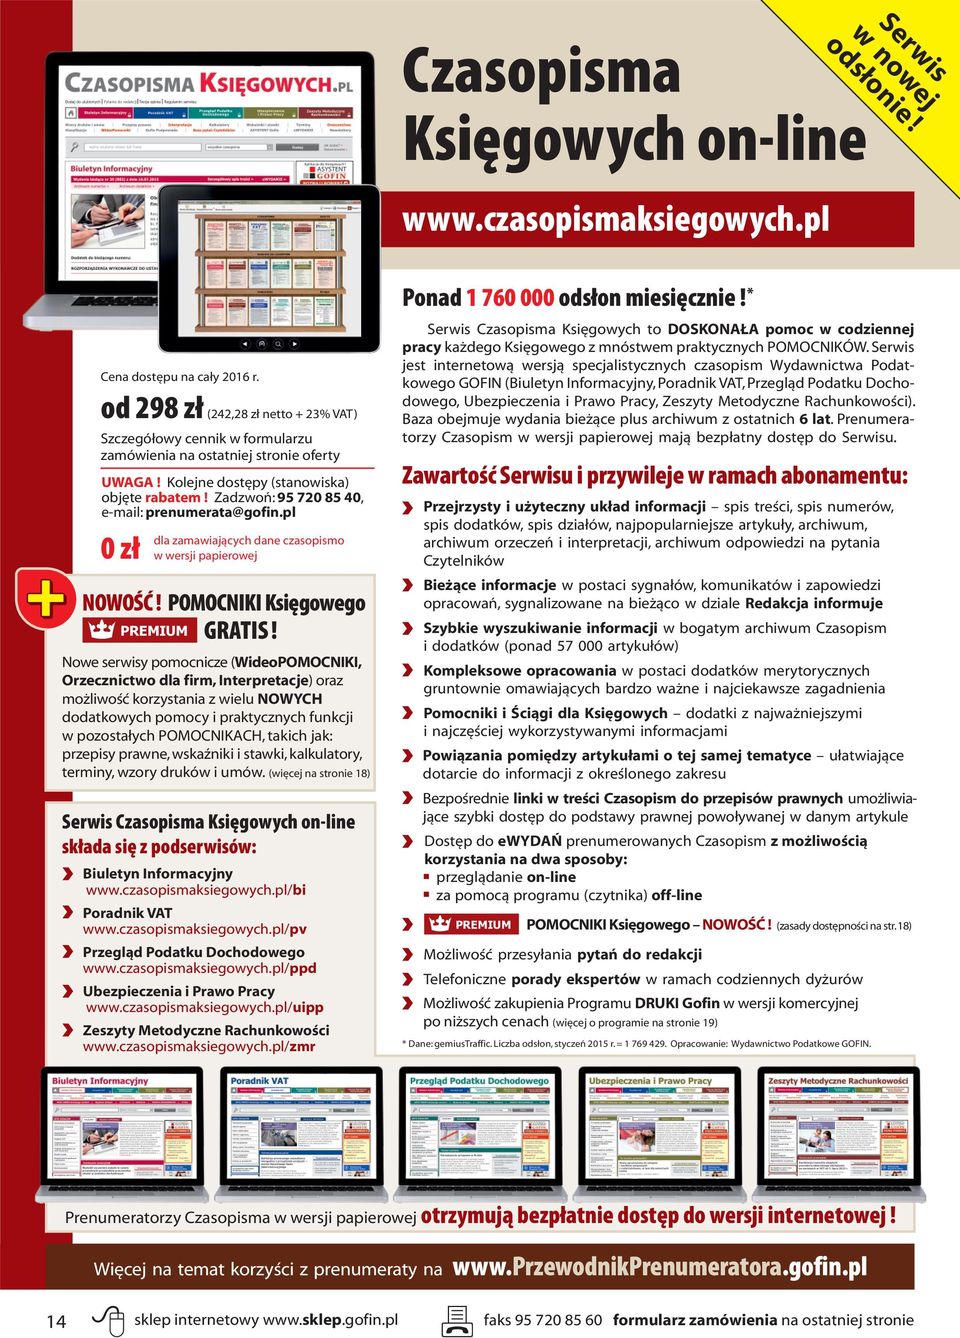 Zadzwoń: 95 720 85 40, e-mail: prenumerata@gofin.pl 0 zł dla zamawiających dane czasopismo w wersji papierowej NOWOŚĆ! POMOCNIKI Księgowego PREMIUM GRATIS!